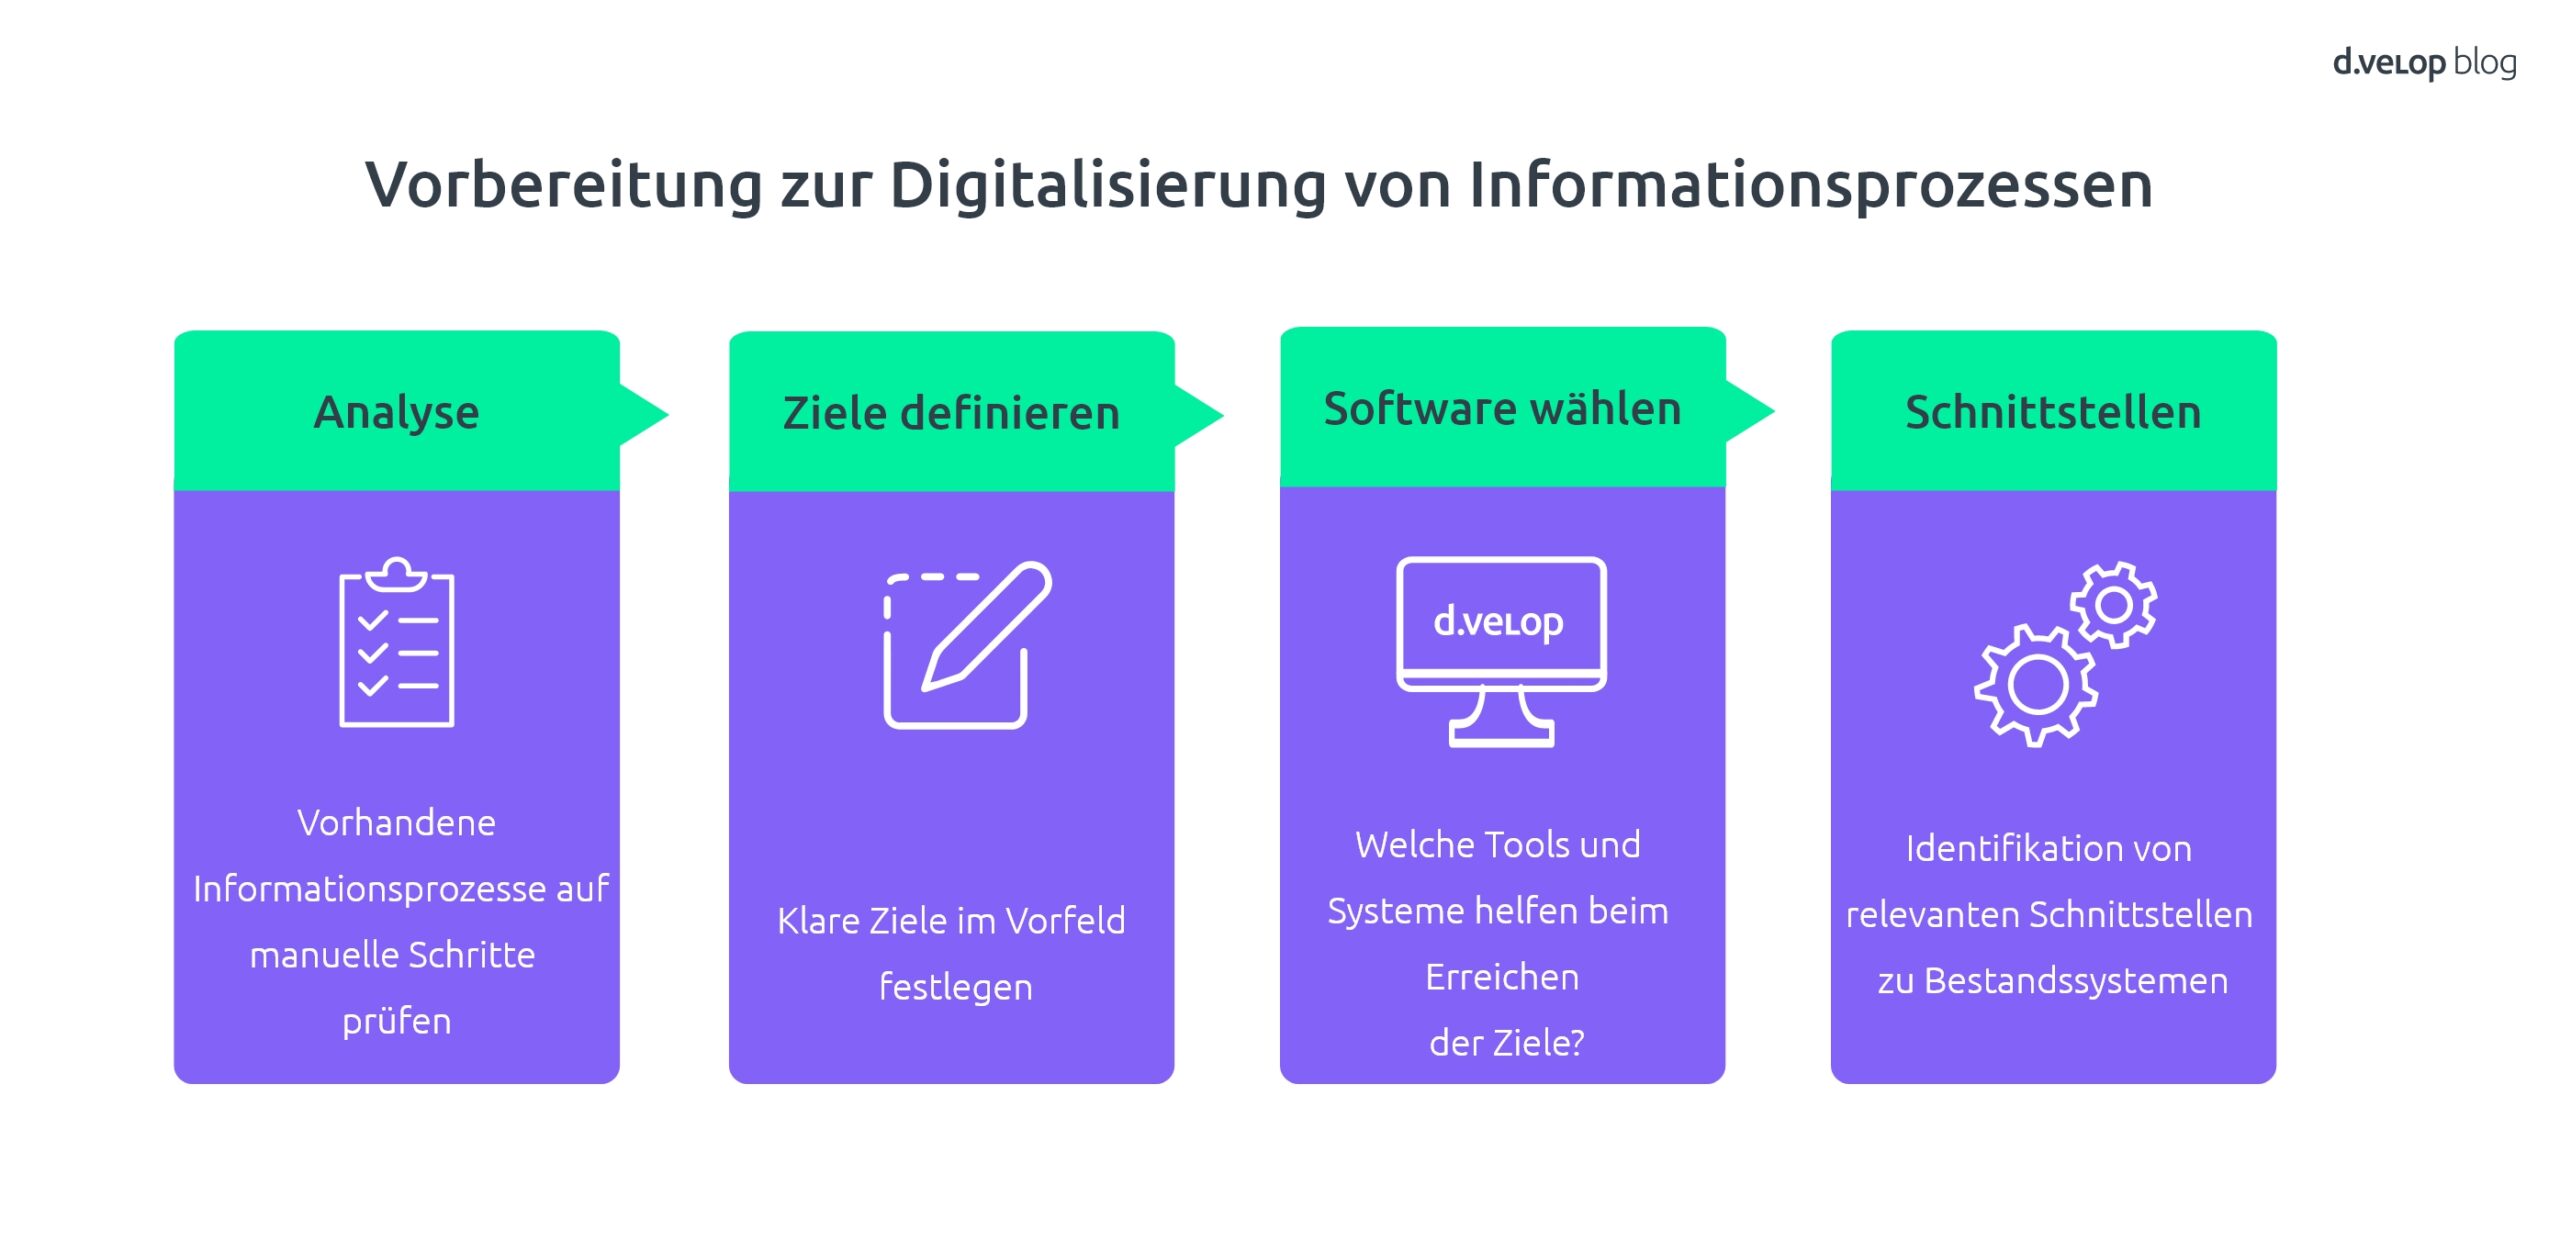 Infografik zur Vorbereitung der Digitalisierung von Informationsprozessen